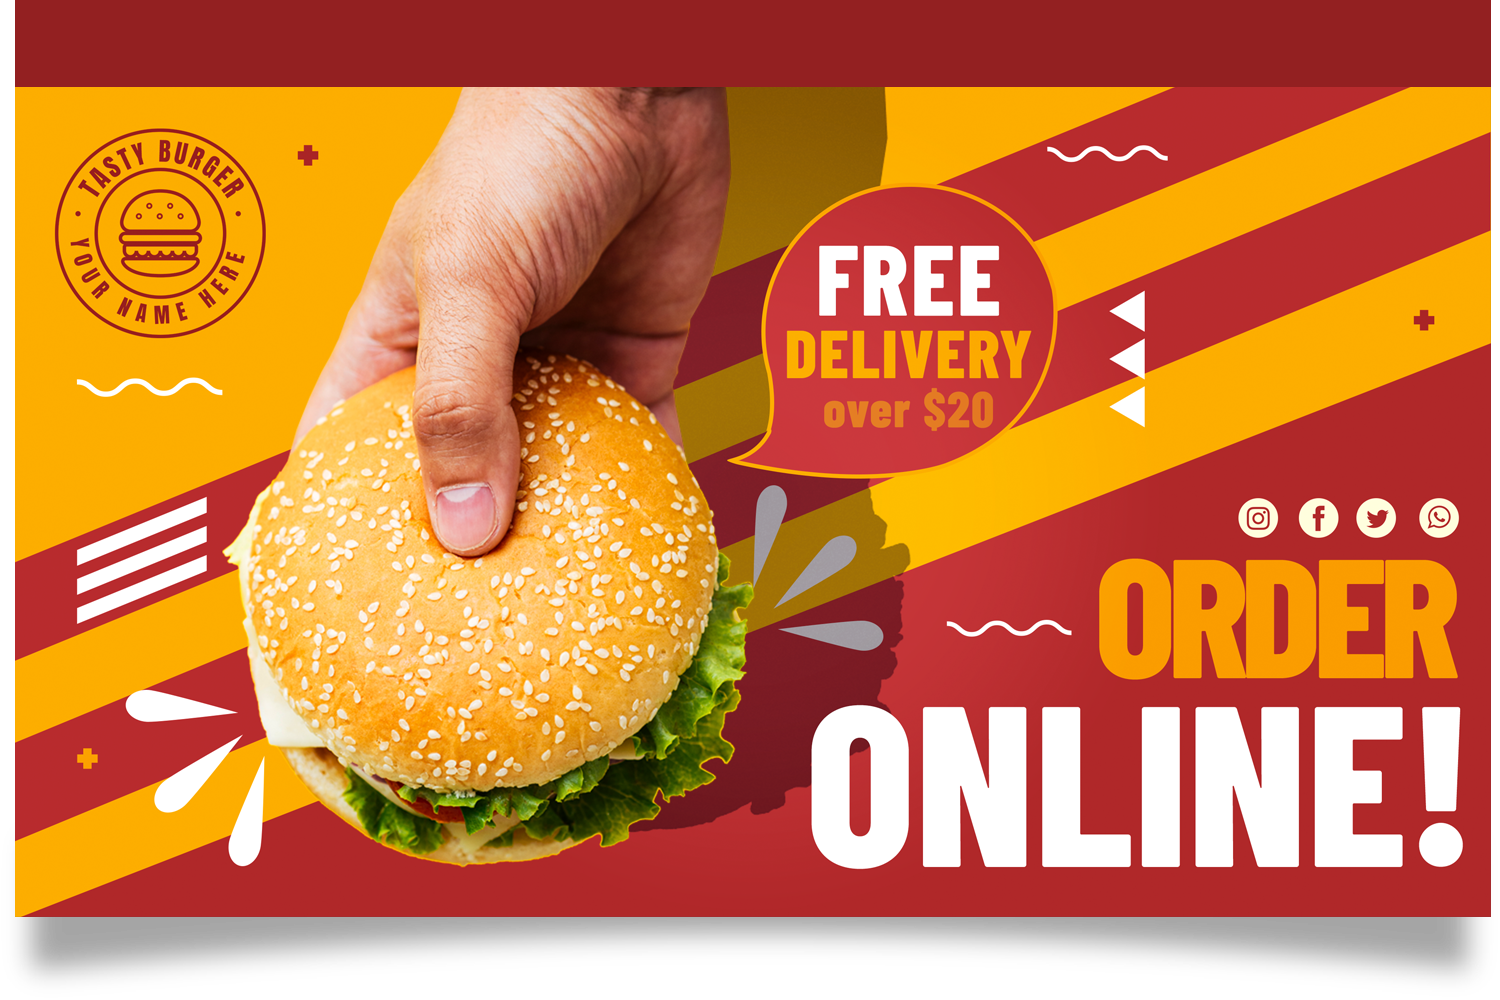 Restaurant Delivery Web Design (Order Online)